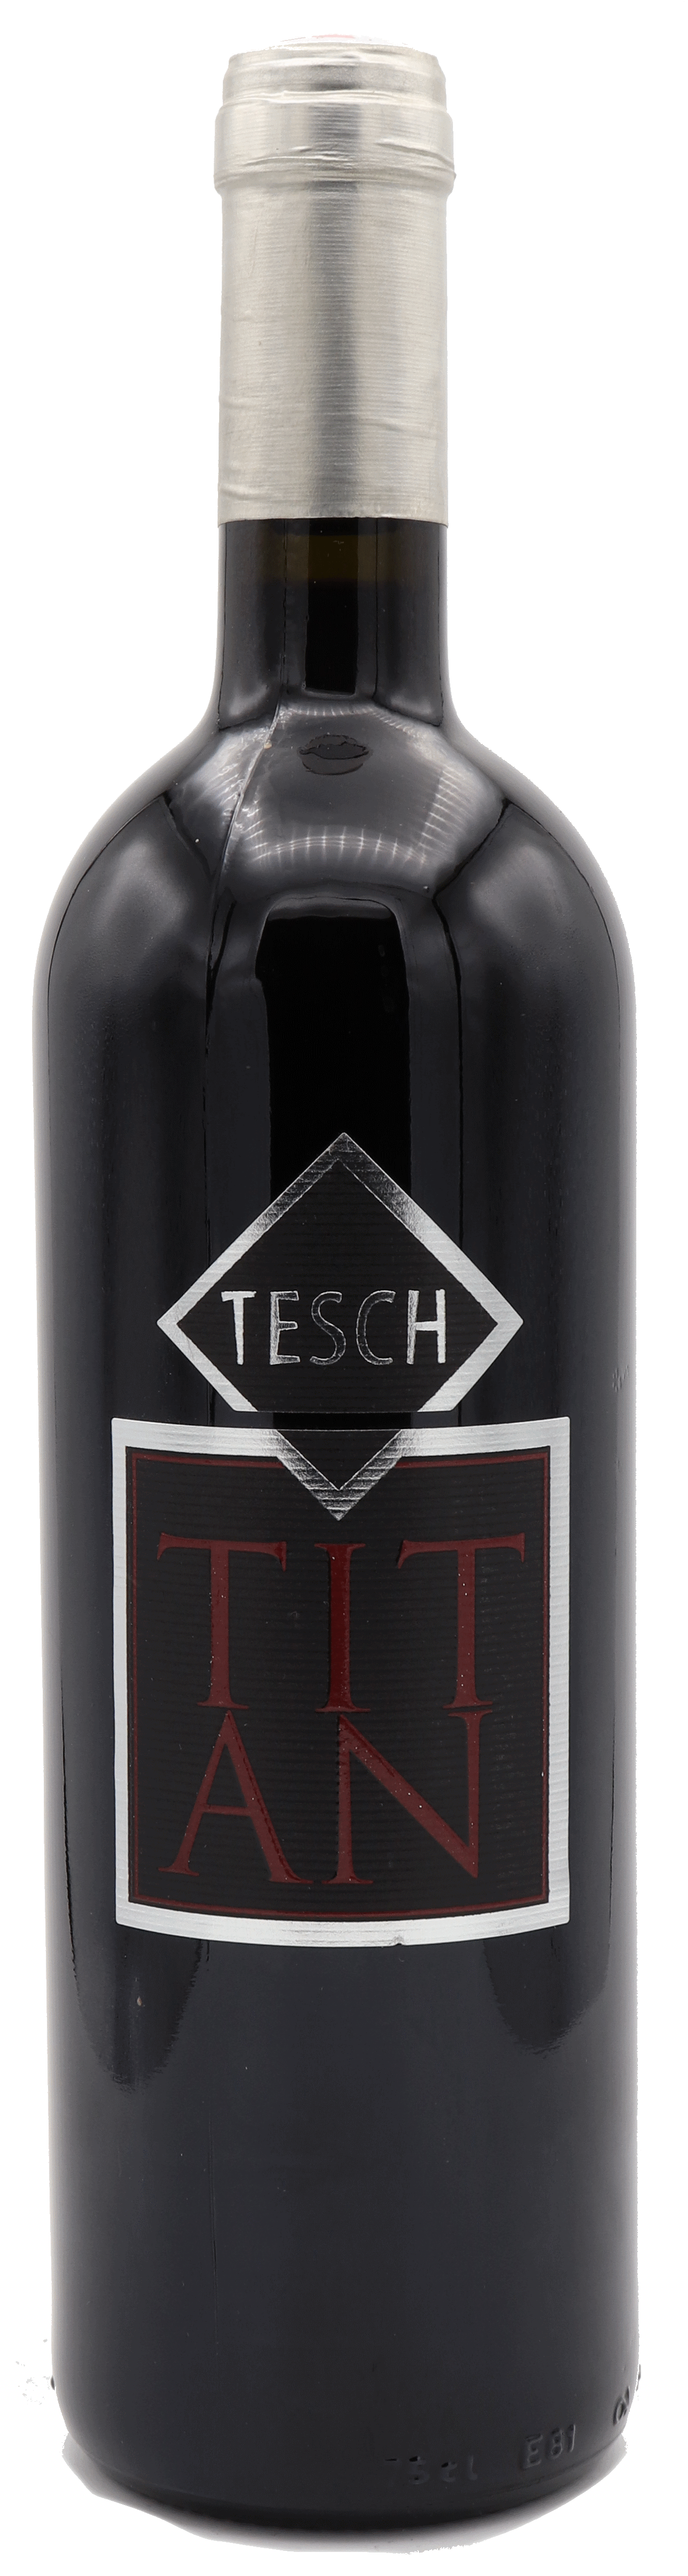 Tesch - Titan 2007